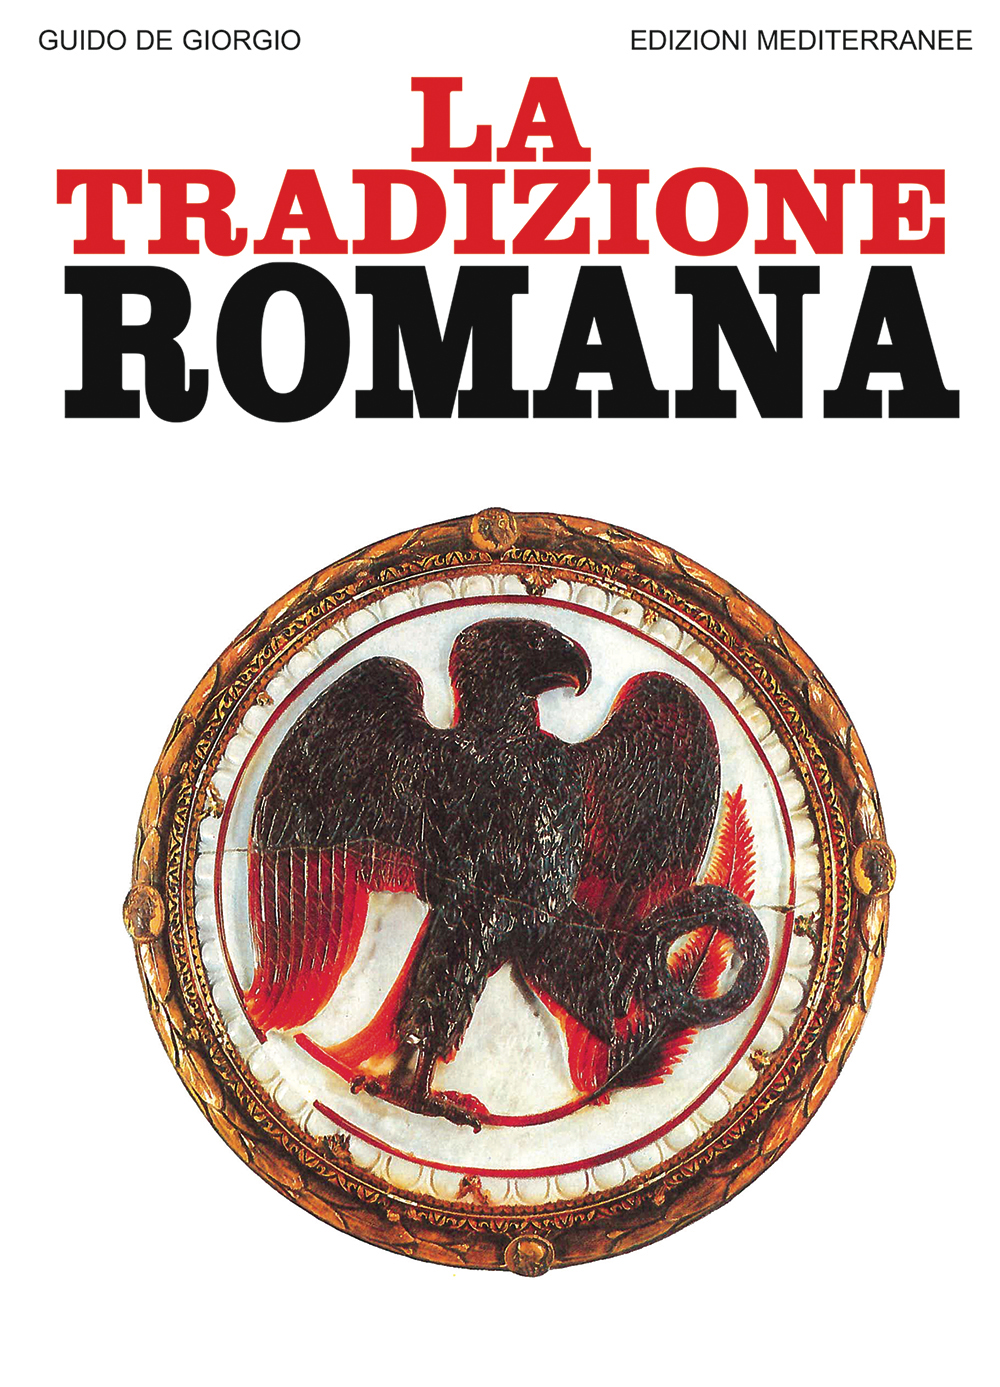 Libri De Giorgio Guido - La Tradizione Romana NUOVO SIGILLATO, EDIZIONE DEL 01/03/1989 SUBITO DISPONIBILE